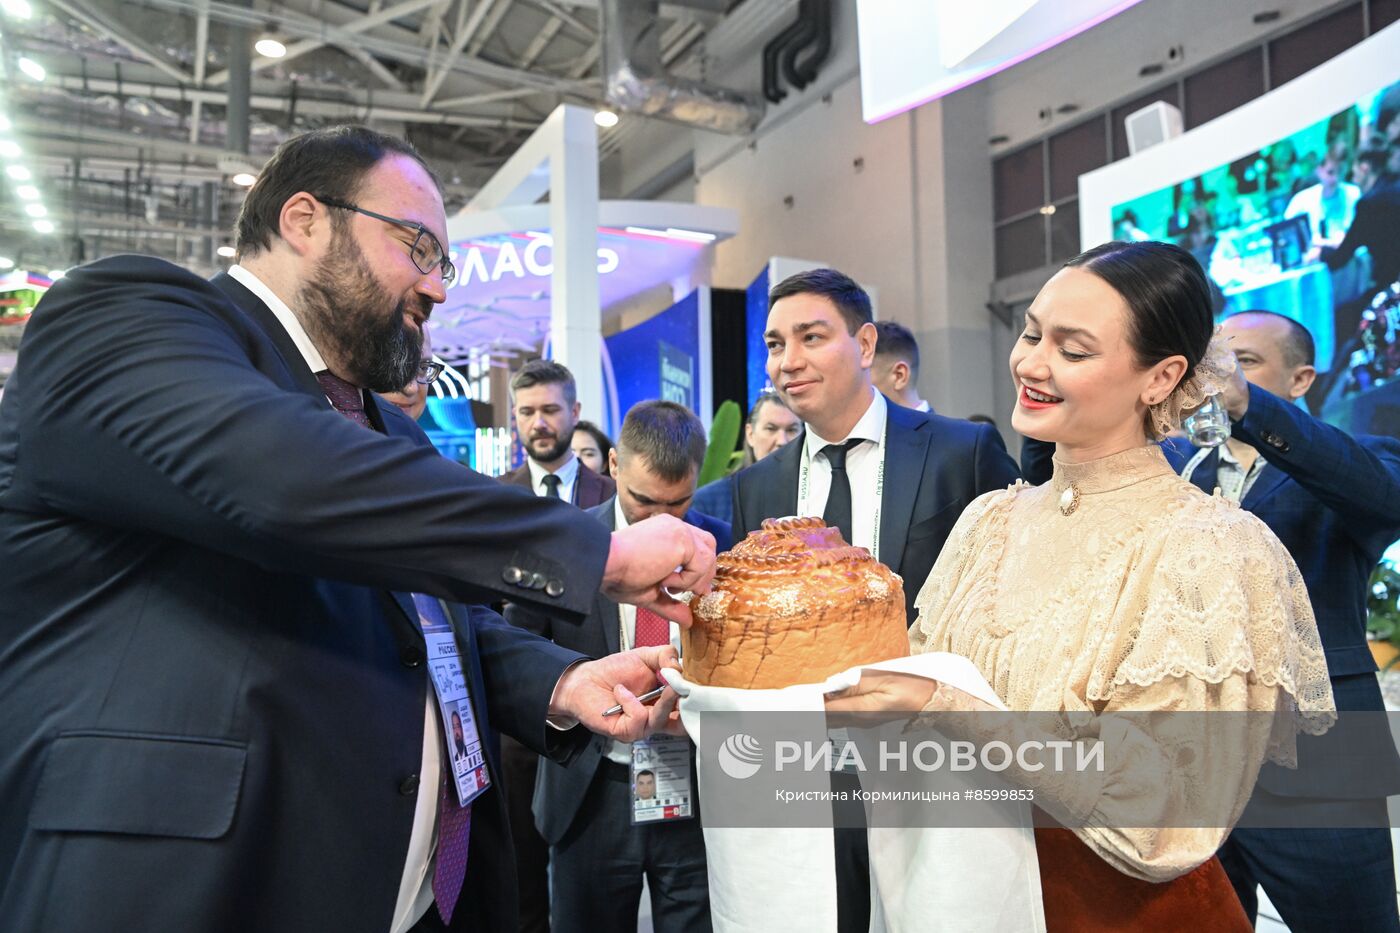 Выставка "Россия". Министр цифрового развития М. Шадаев осмотрел стенды